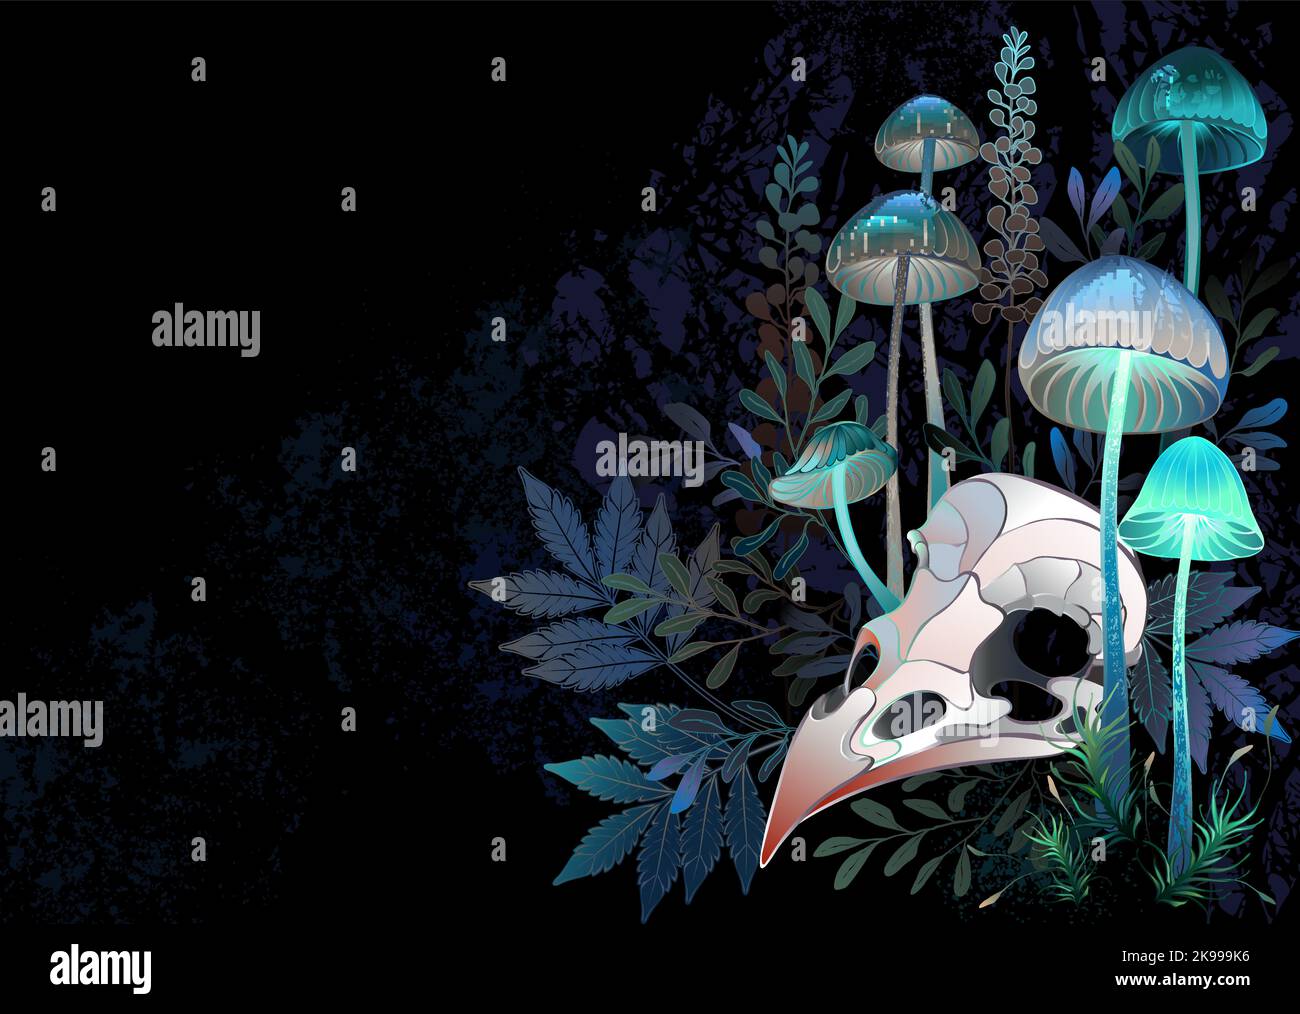 Kunstvoll gezeichneter Vogelschädel liegt zwischen halluzinogenen, leuchtenden Pilzen und Büschen giftiger Sumpfpflanzen auf schwarzem strukturierten Hintergrund. Bir Stock Vektor